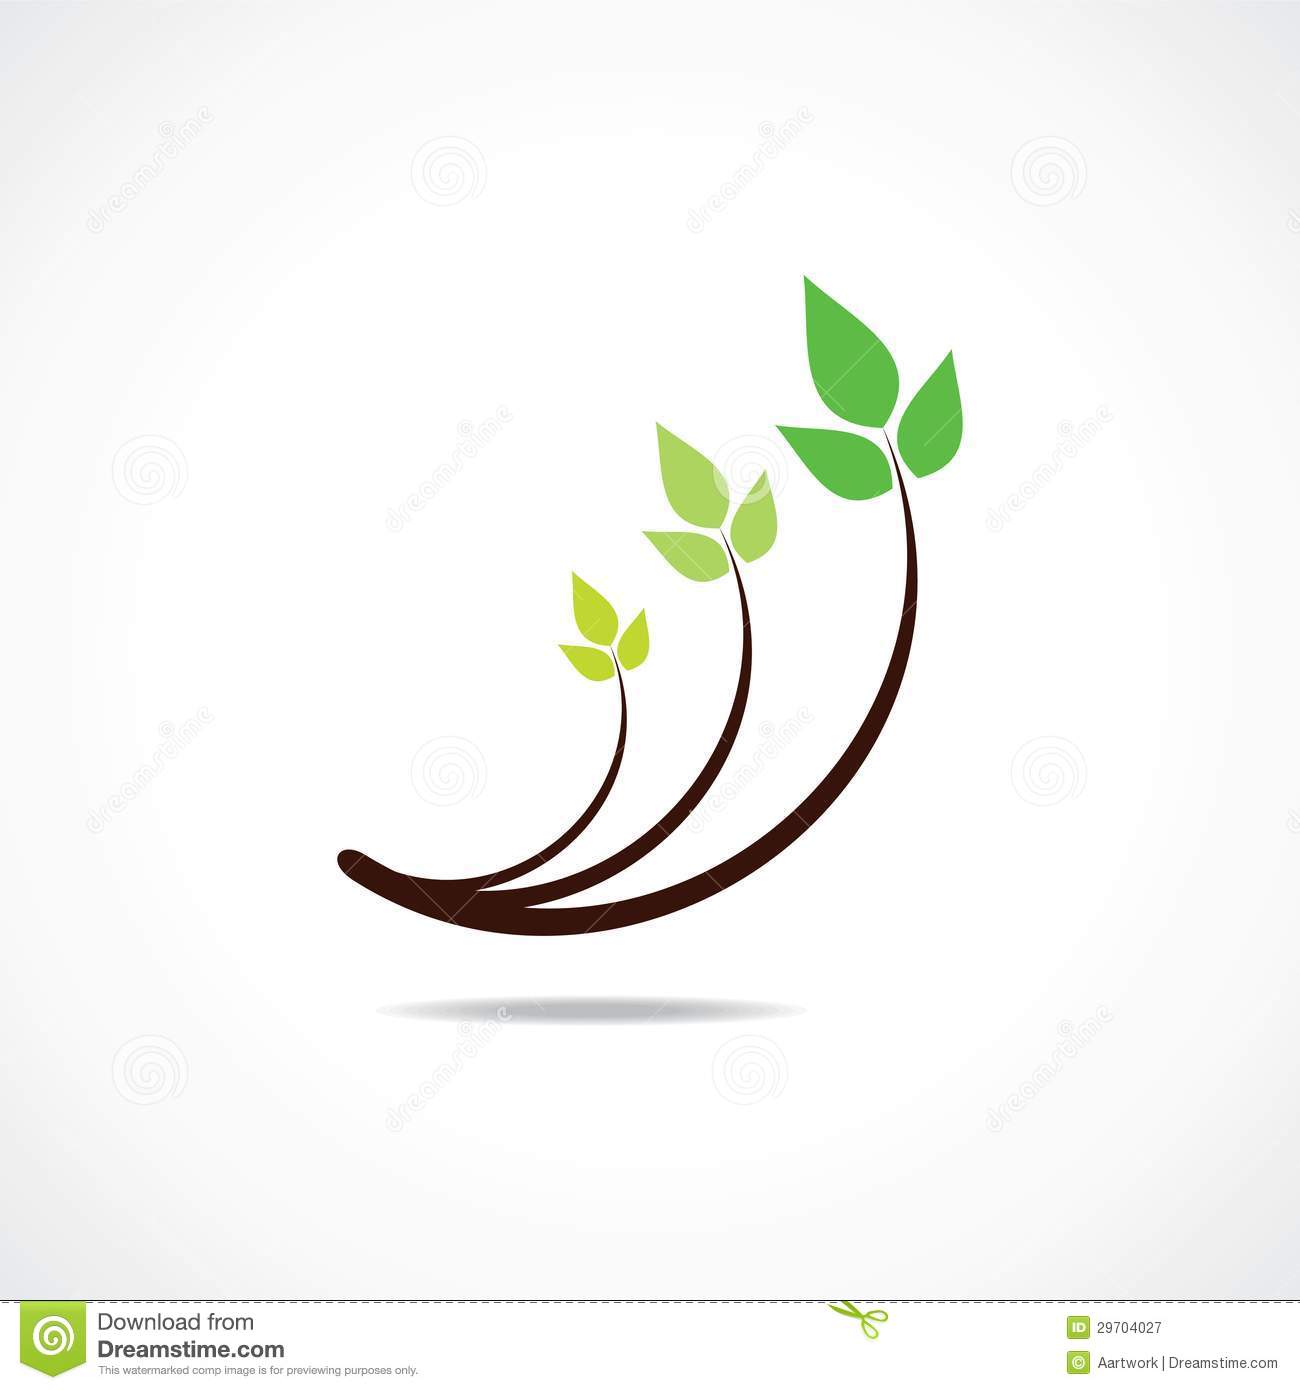 Green Leaf Logo Design